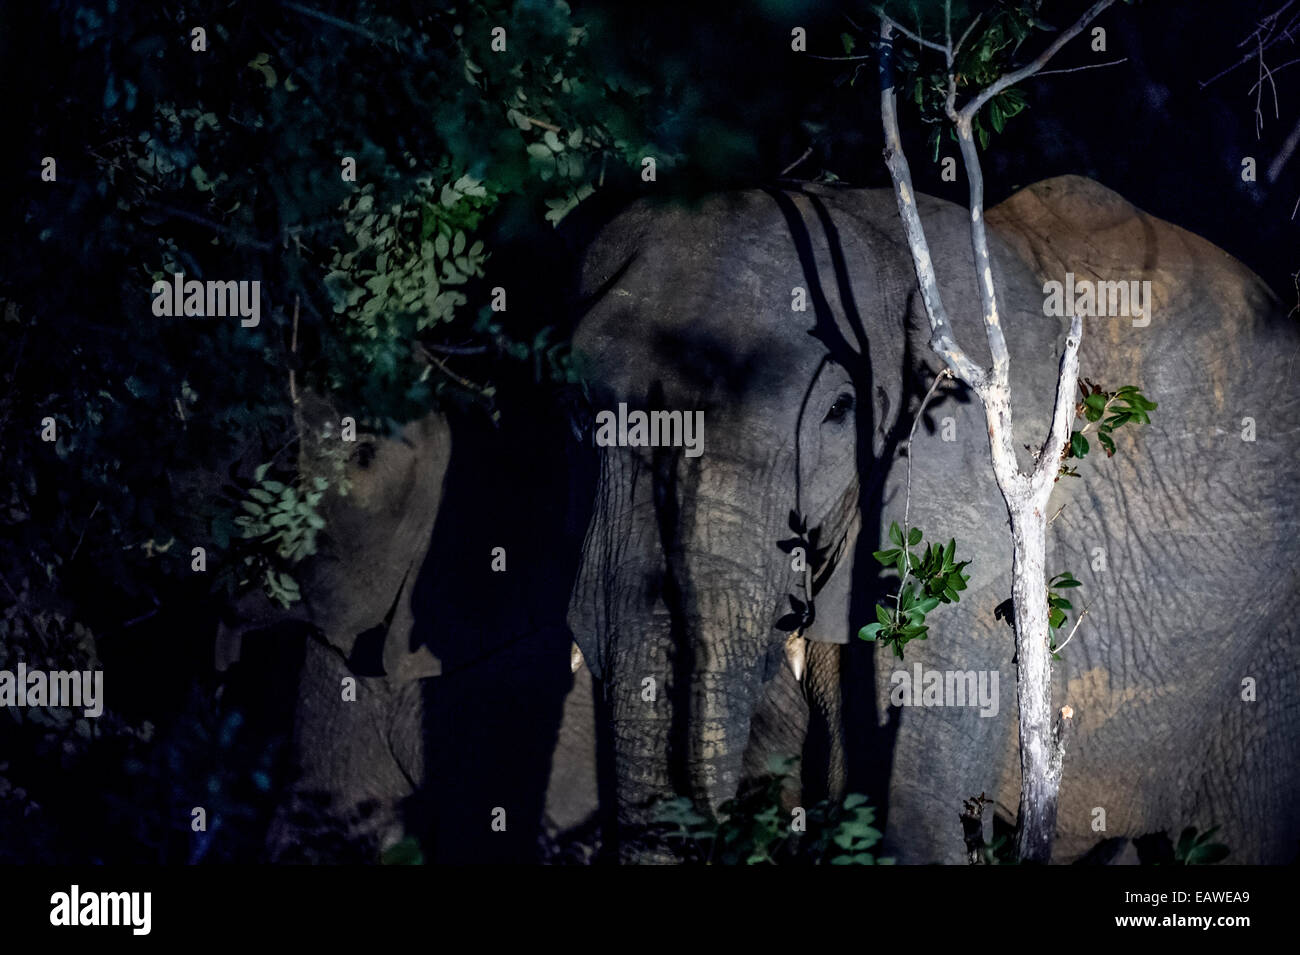 Un troupeau d'éléphants qui se nourrissent de feuillage d'arbres forestiers dans la nuit. Banque D'Images